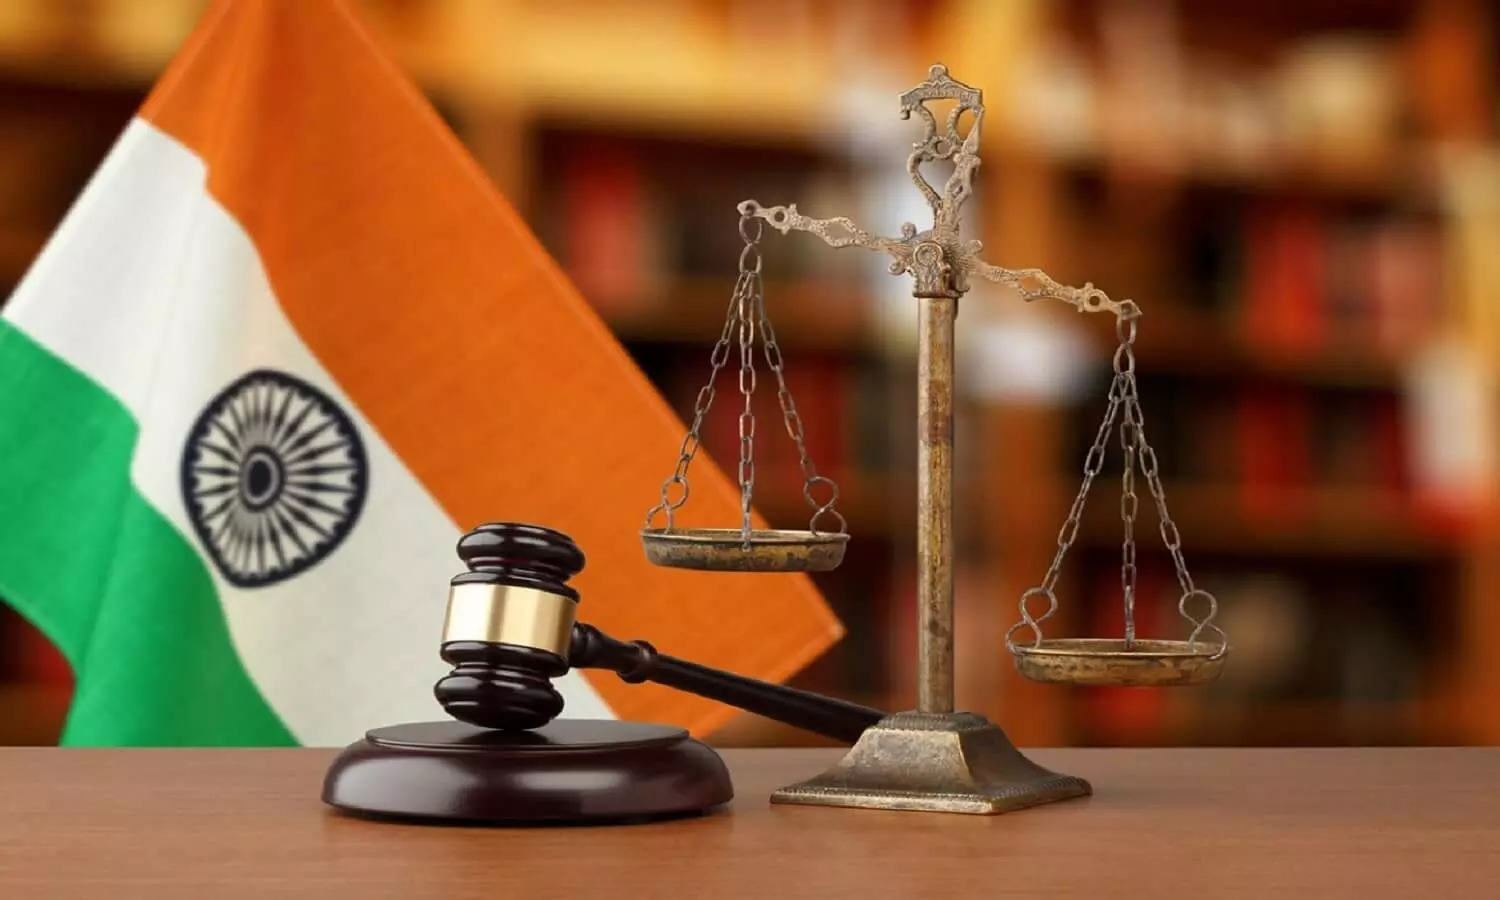 Delhi Higher Judicial Service Exam 2022: दिल्ली न्यायिक सेवा परीक्षाओं के लिए अधिसूचना जारी, 168 पदों के लिए आवेदन शुरू | Delhi Higher Judicial Service Exam 2022: Notification released for ...